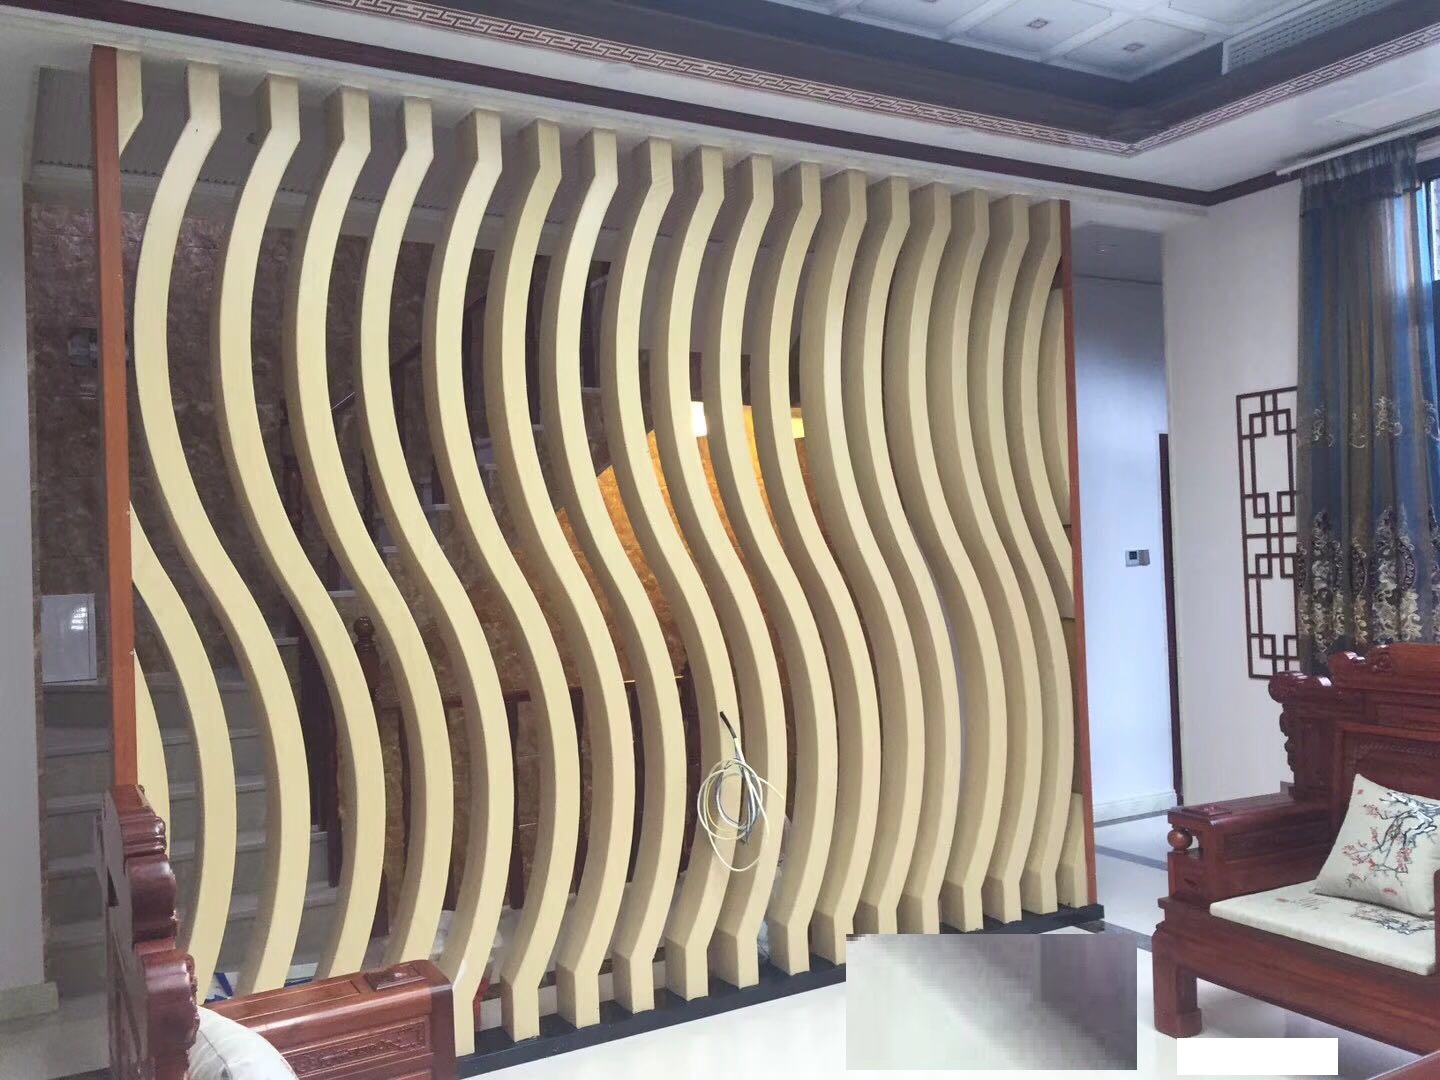 耐火3D背景墙波浪板-尤尼夫 - 北京市 - 生产商 - 3d板产品 - 三维板|波浪板|立体波浪板|3D背景墙|效果图|立体装饰墙板|3D